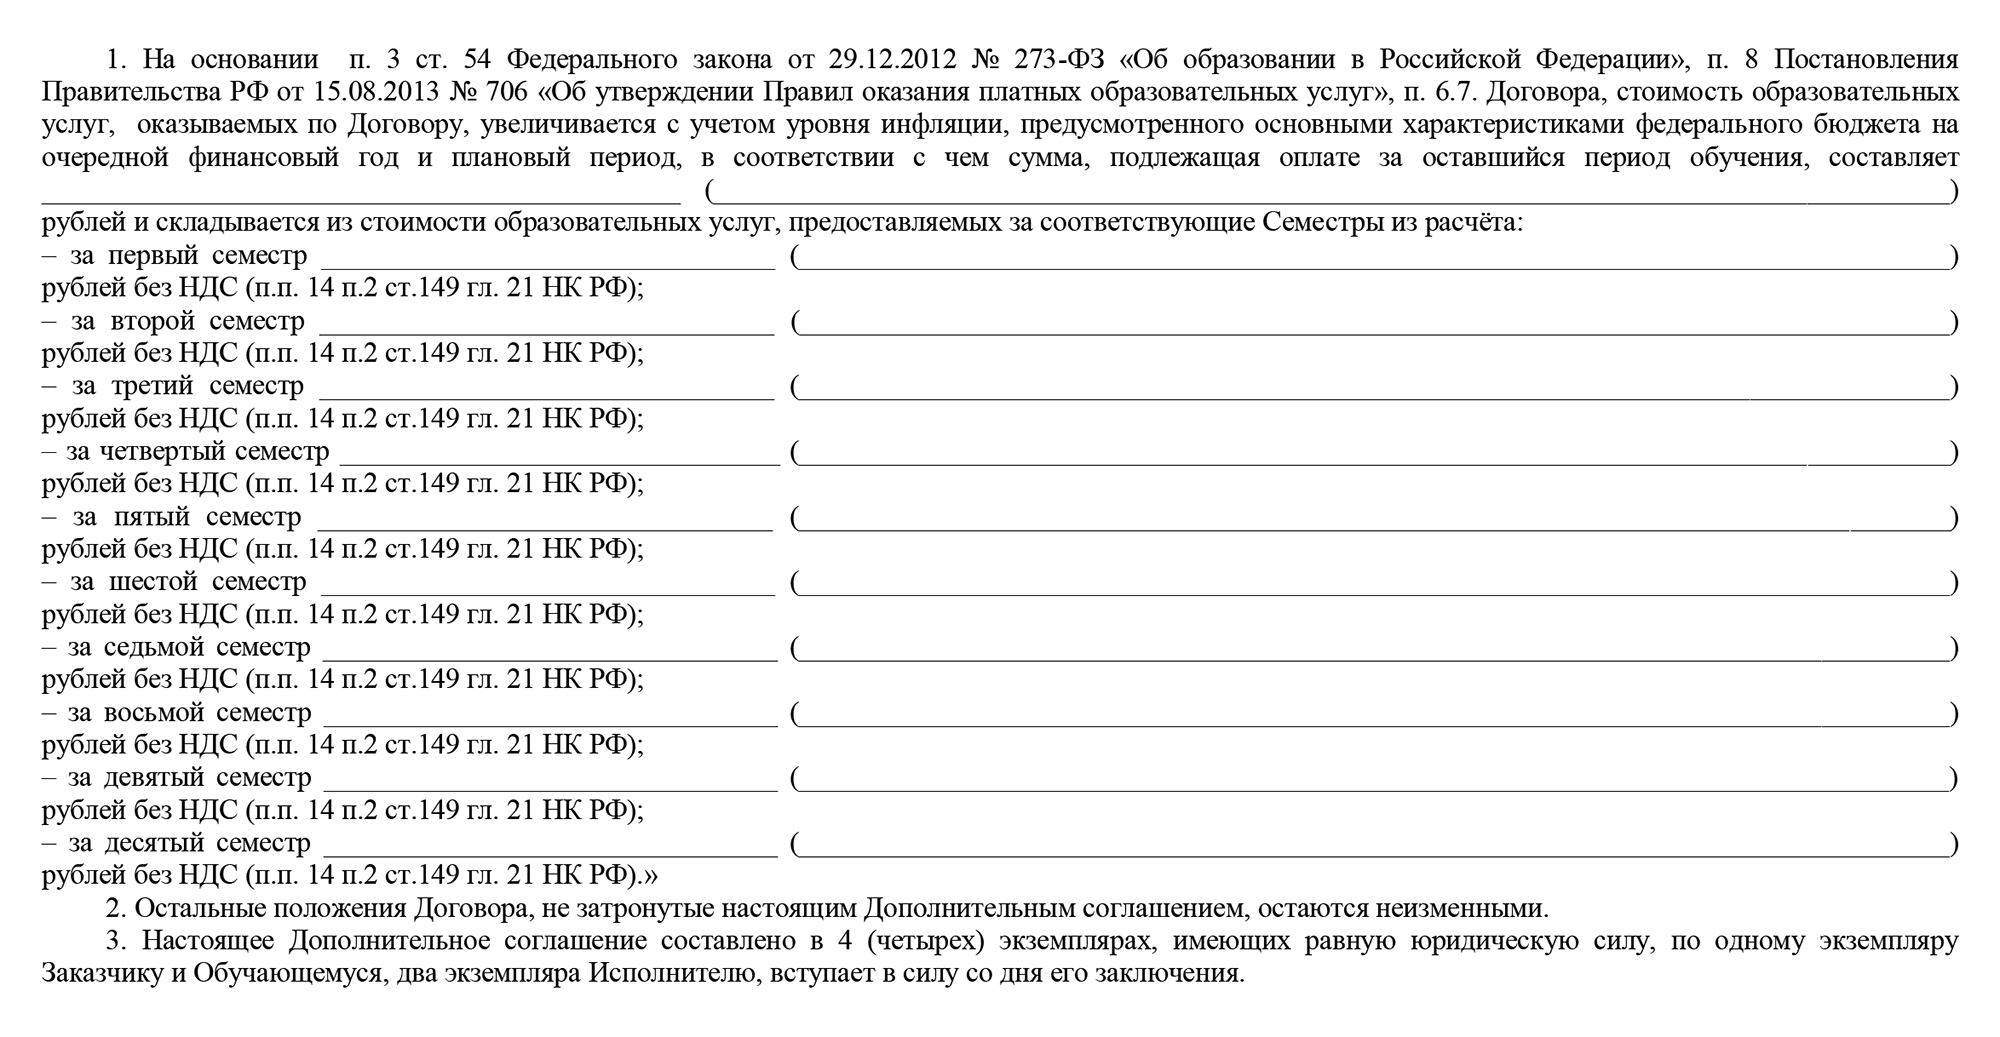 Пример дополнительного соглашения к договору об образовании на обучение по образовательной программе. Источник: new.rguts.ru